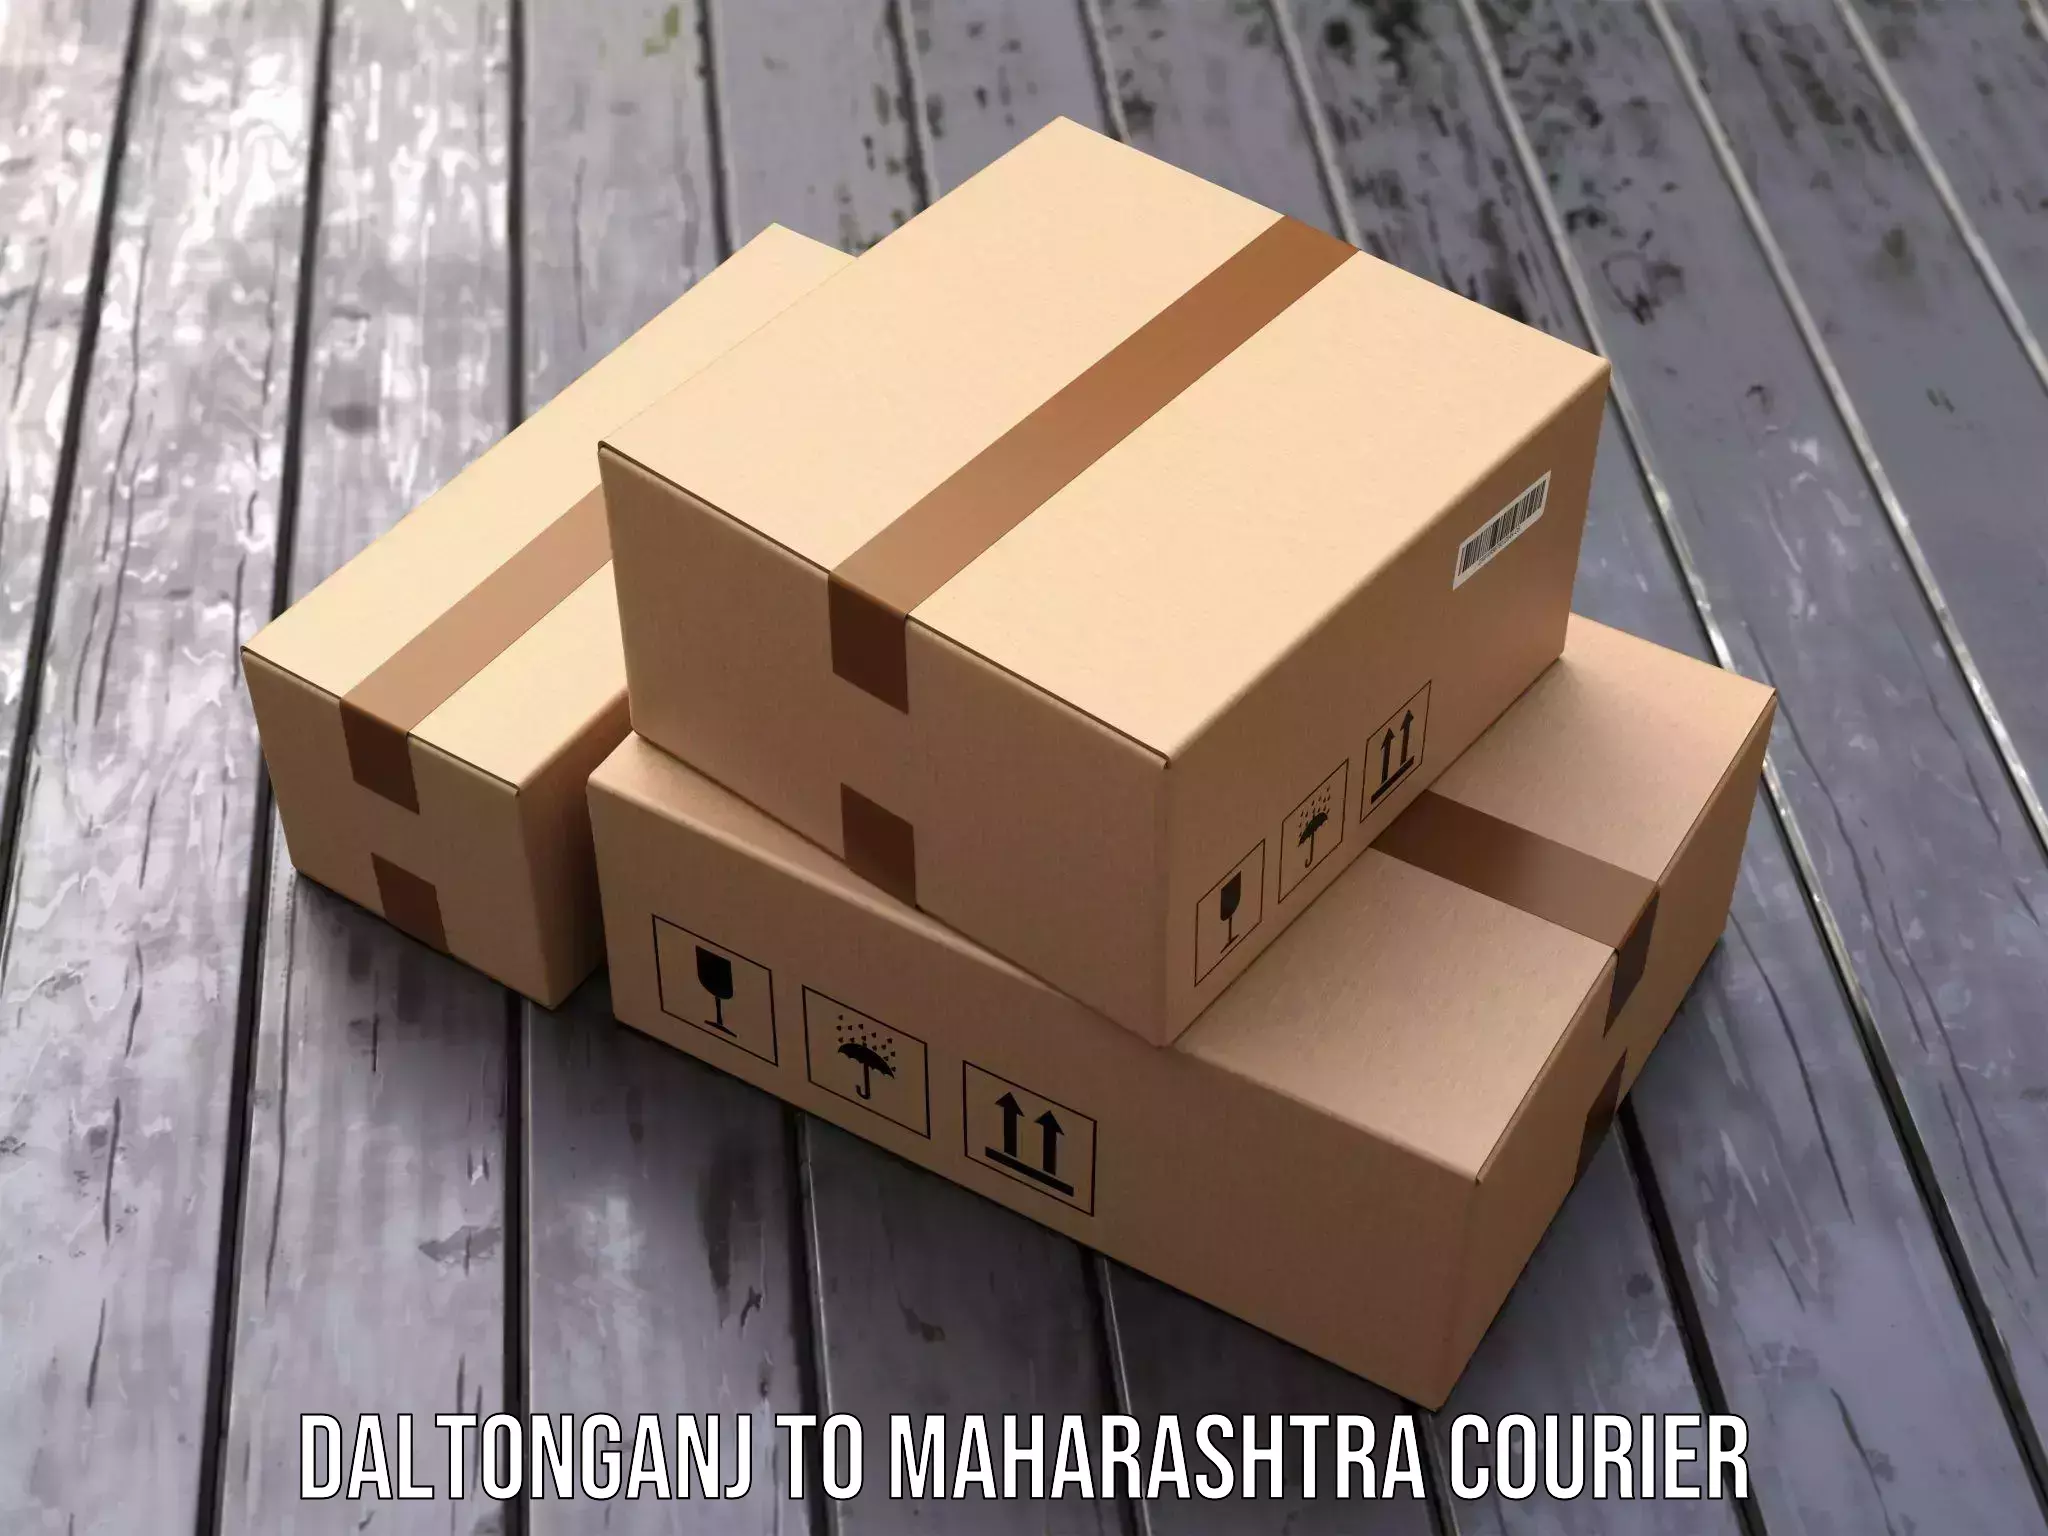 Express courier facilities Daltonganj to Morshi